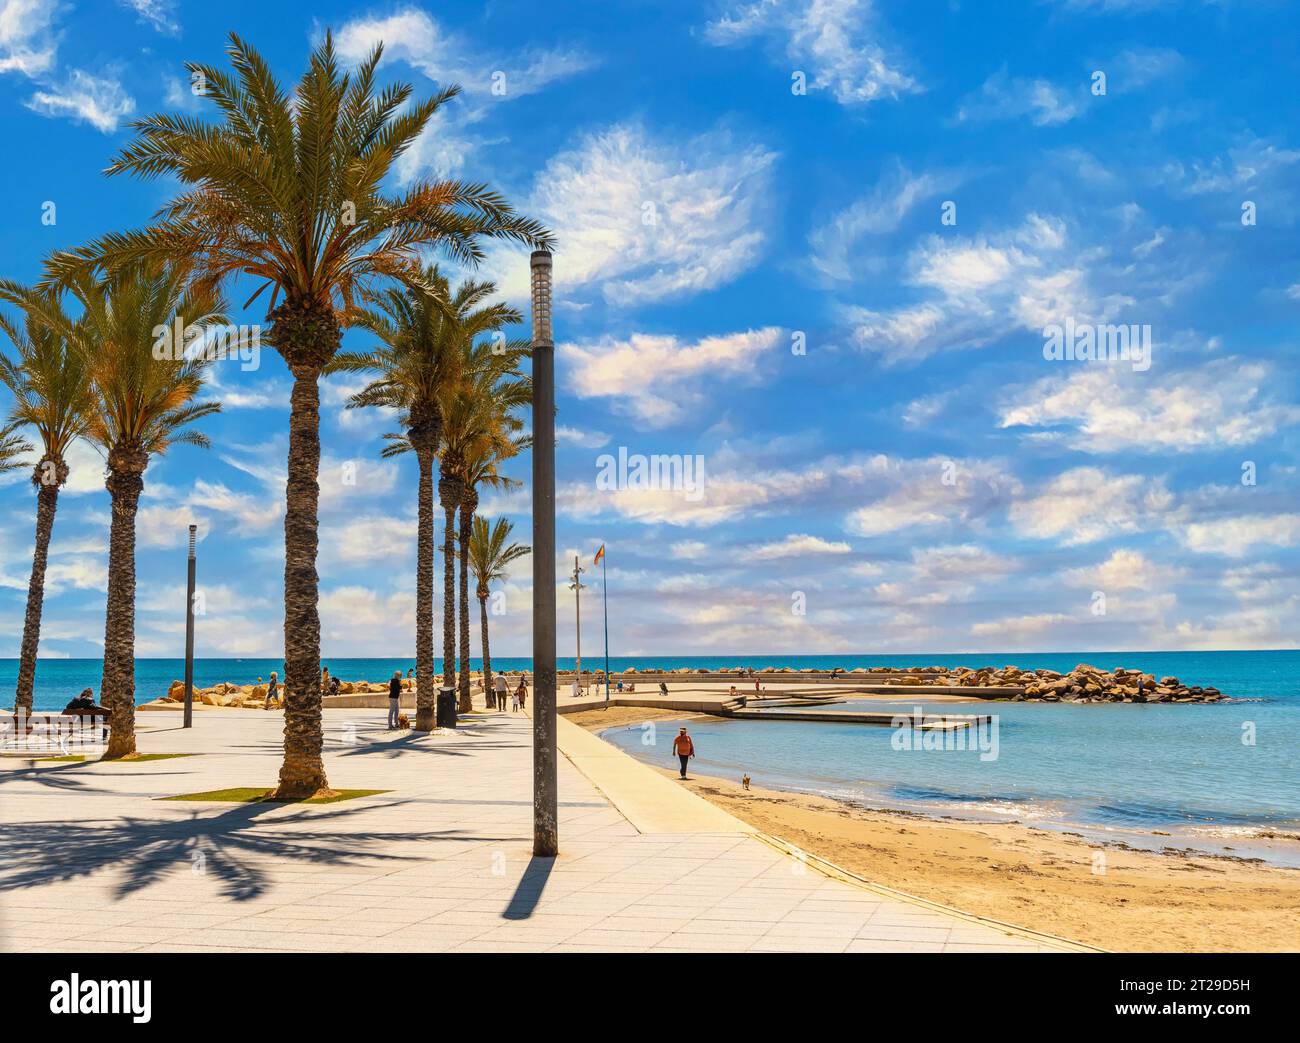 Strand mit Palmen in der Küstenstadt Torrevieja, Alicante, Valencianische Gemeinschaft. Spanien, Mittelmeer Stockfoto